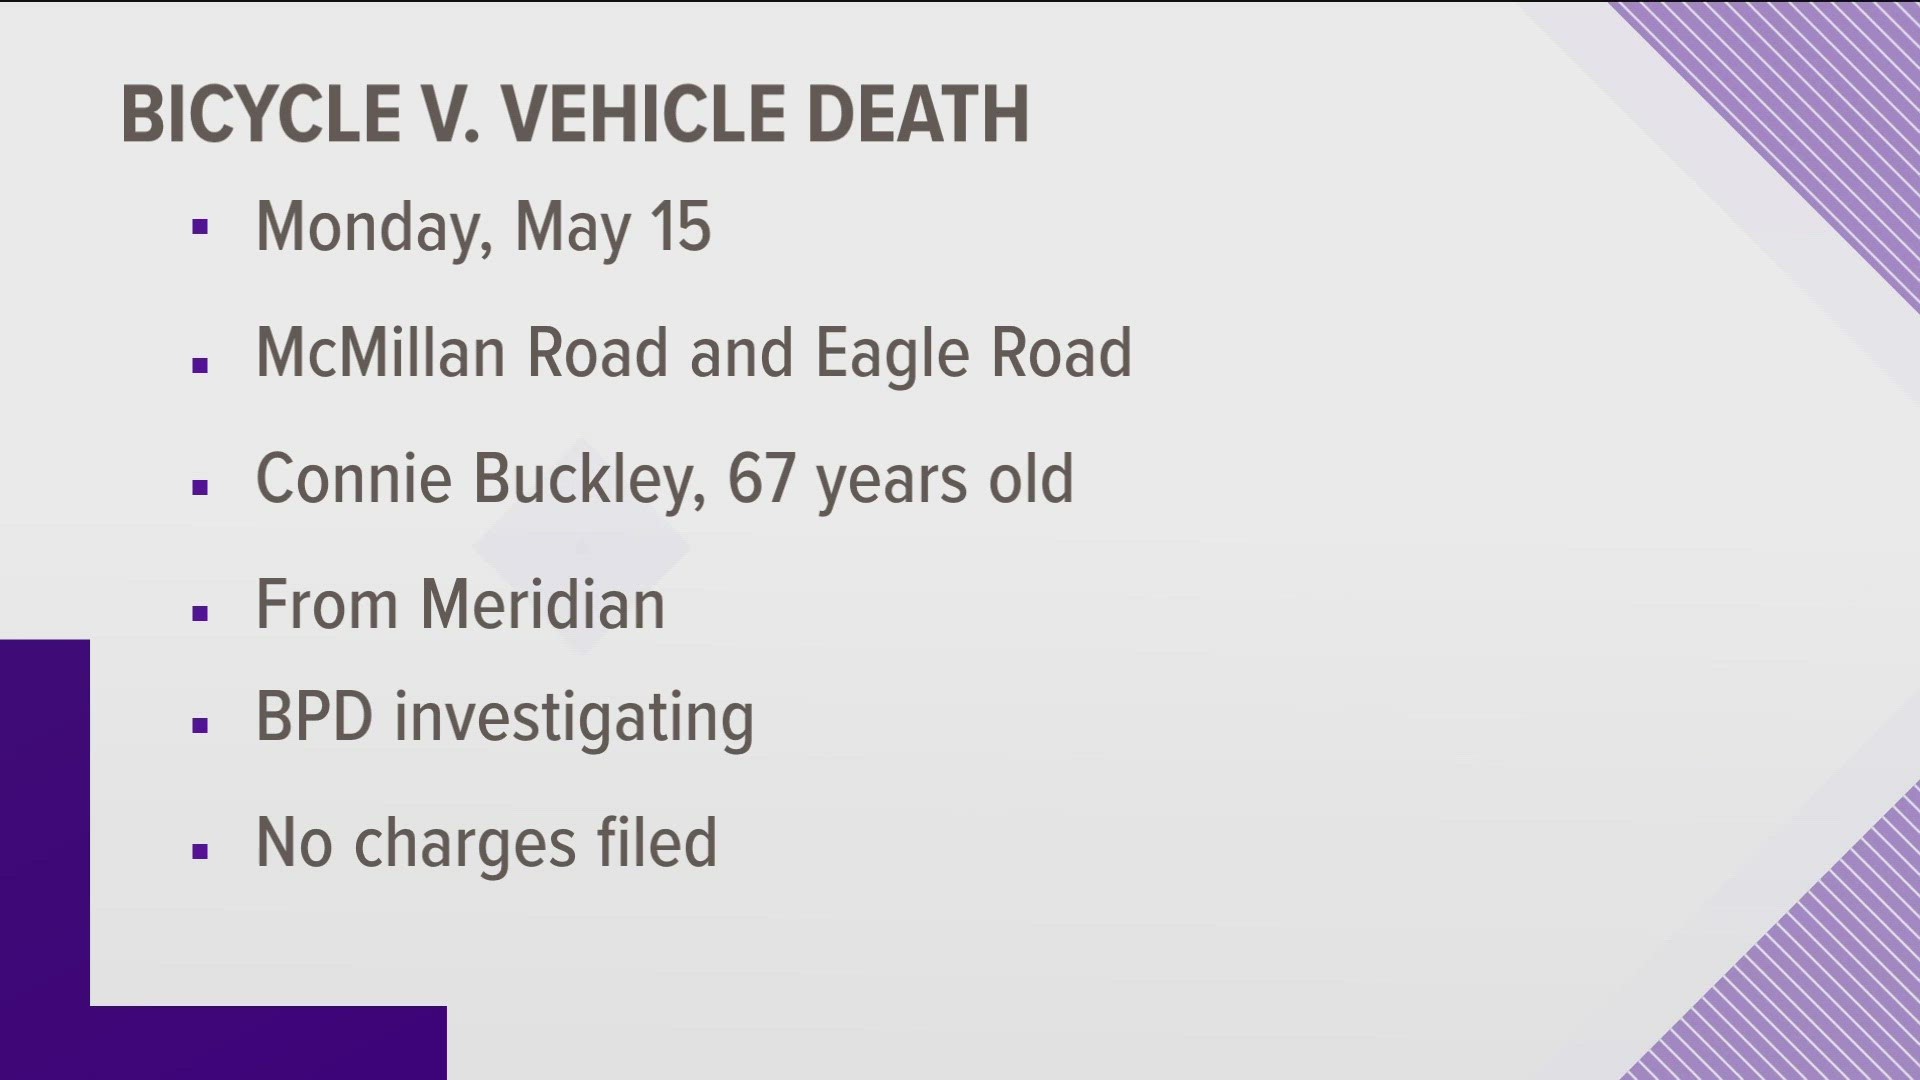 The crash happened May 15 at McMillan and Eagle roads.